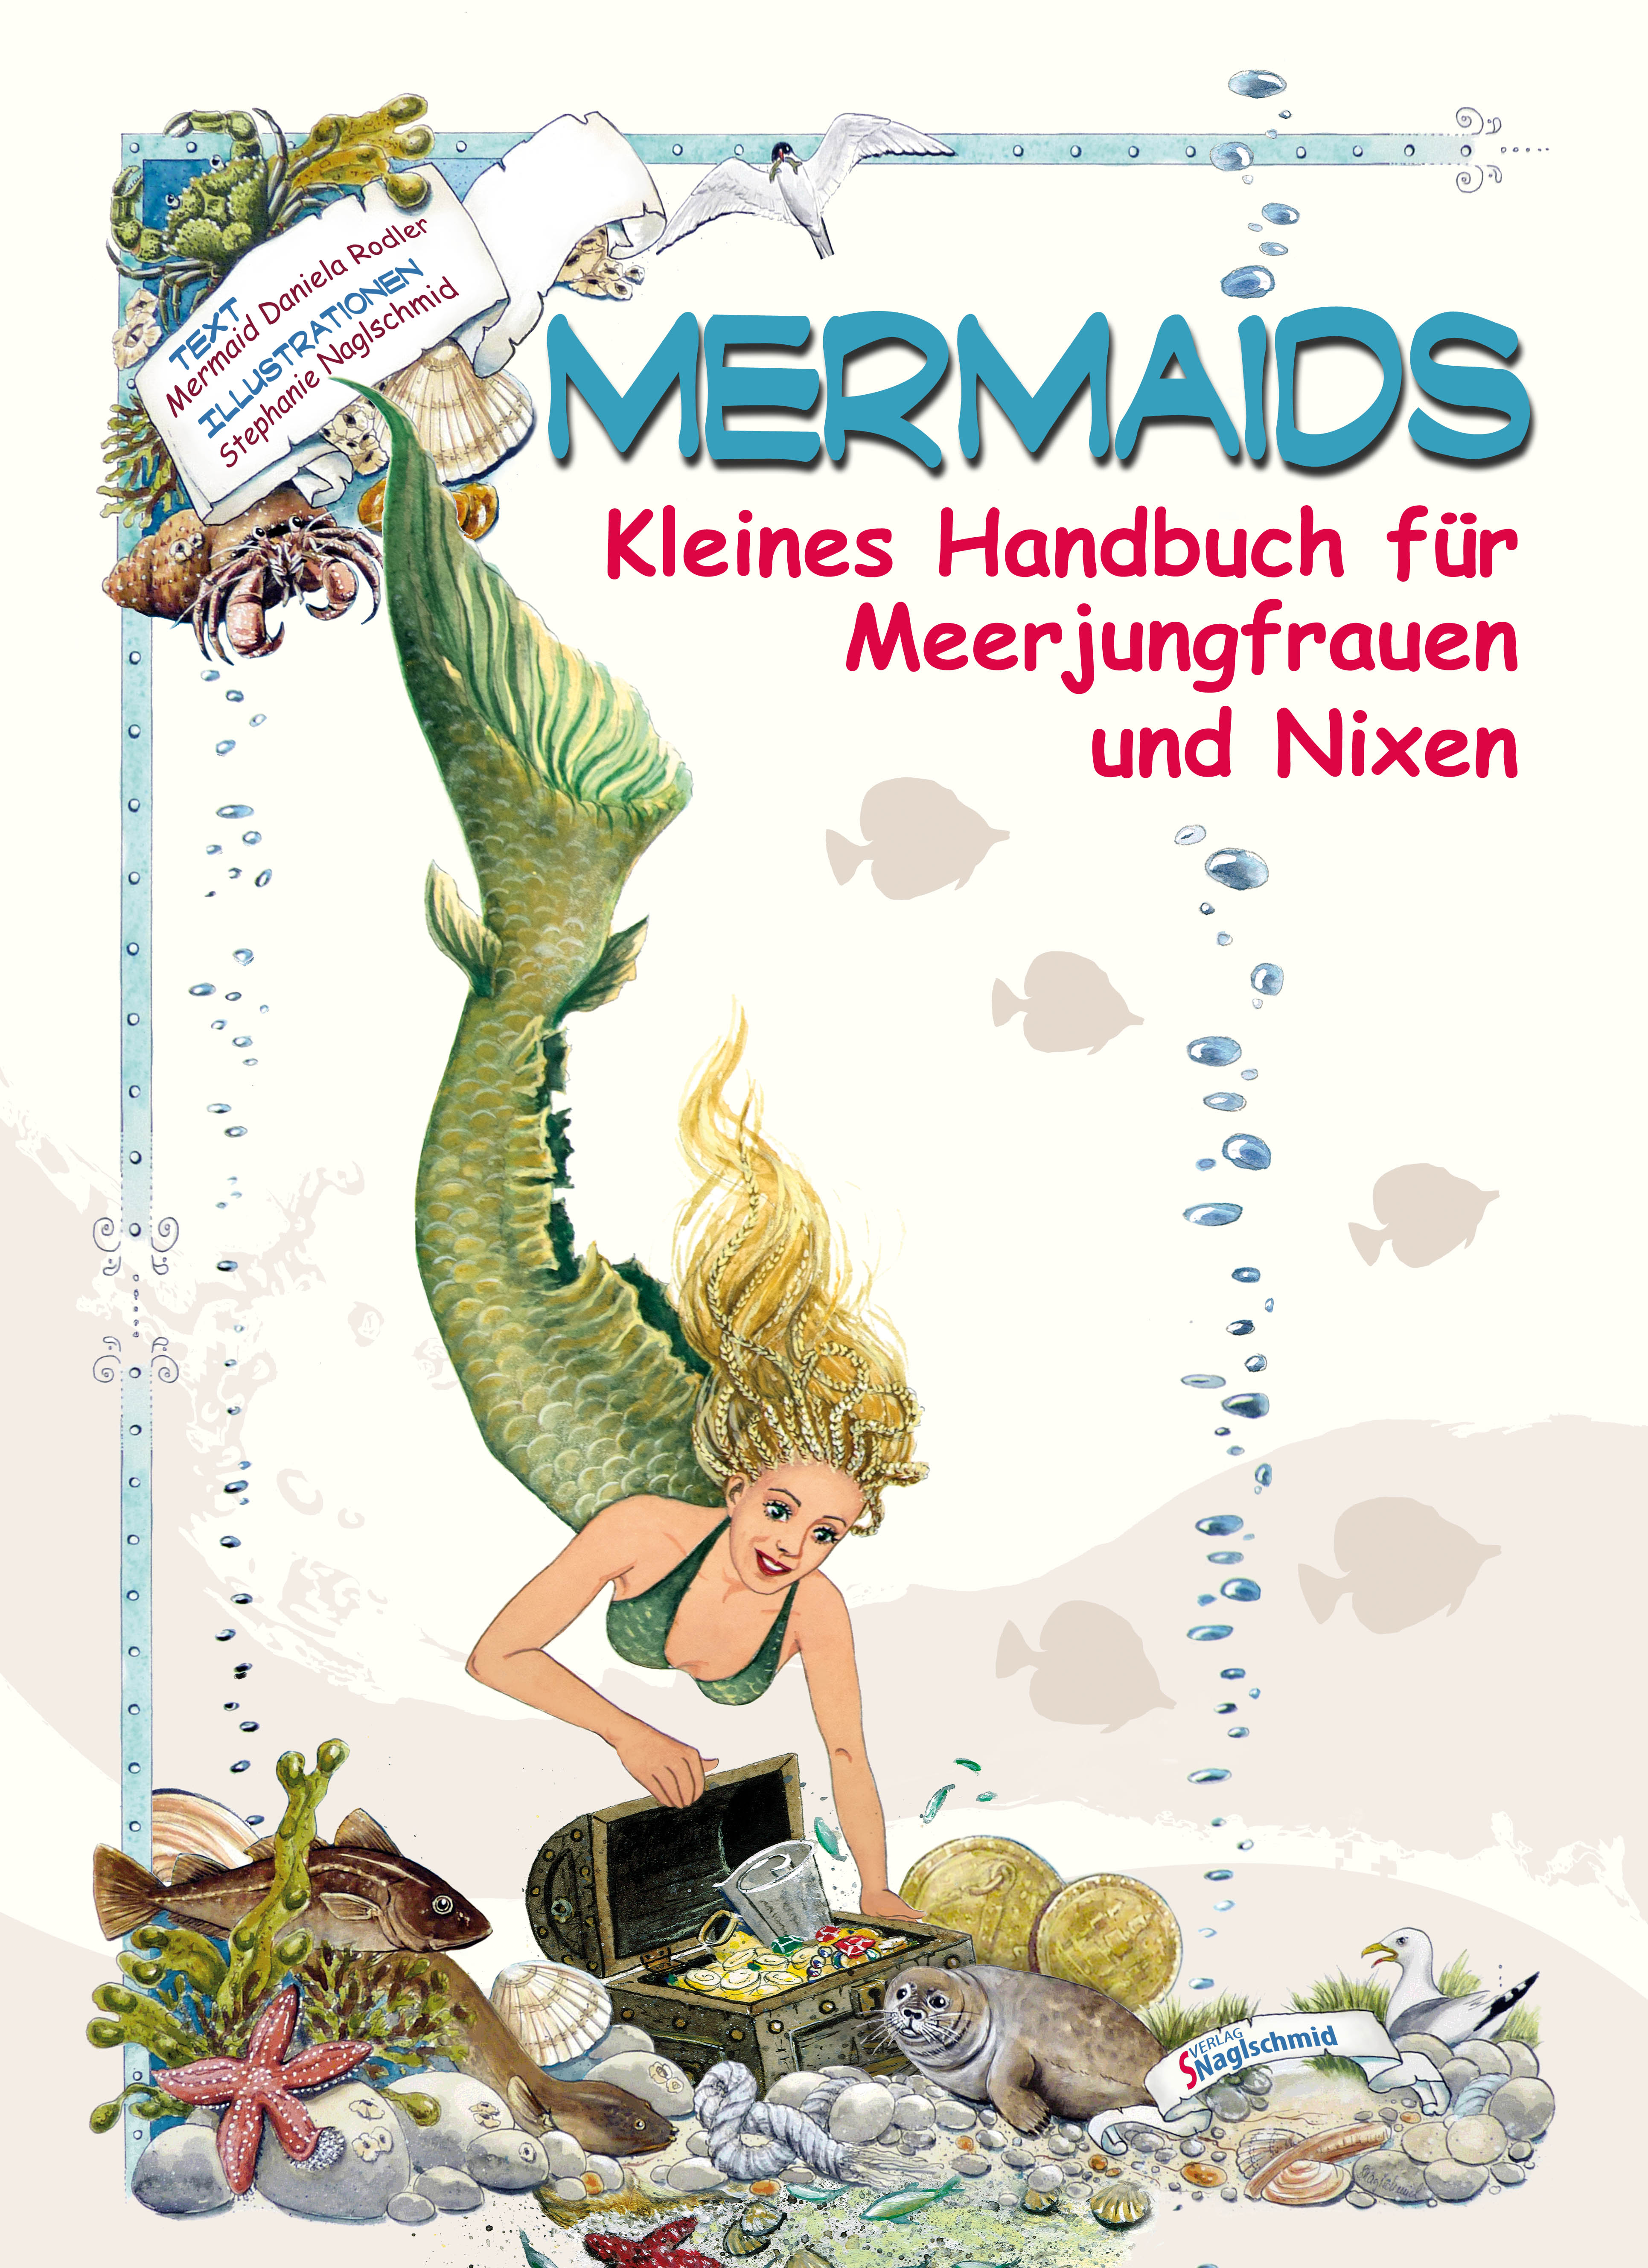 MERMAIDS - Kleines Handbuch für Meerjungfrauen und Nixen